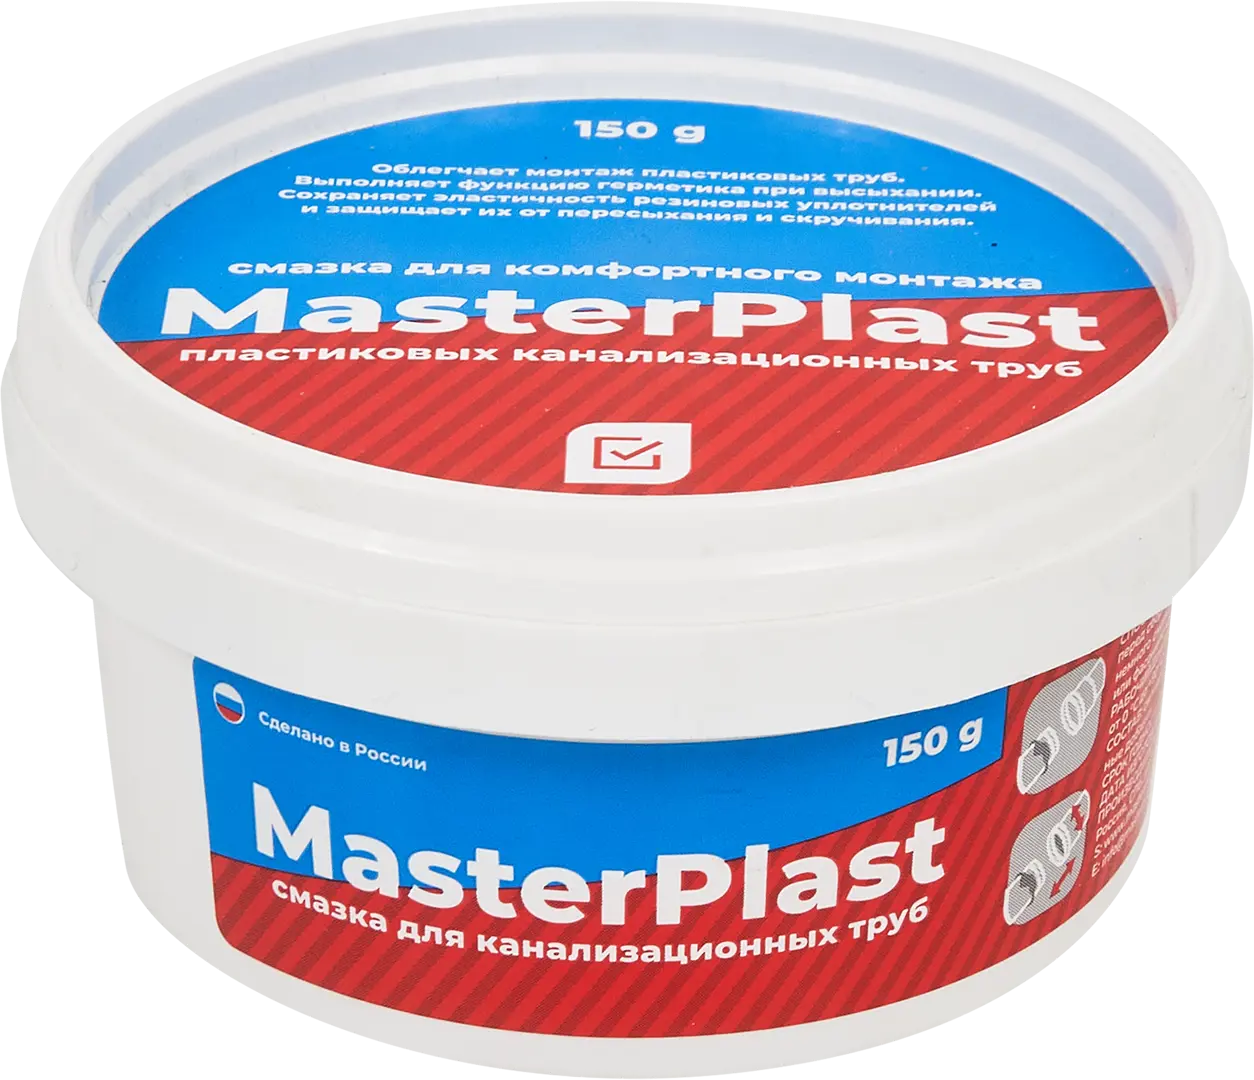 Смазка для канализационных труб Masterplast 150 г спрей смазка для монтажа пластиковых труб mr bond